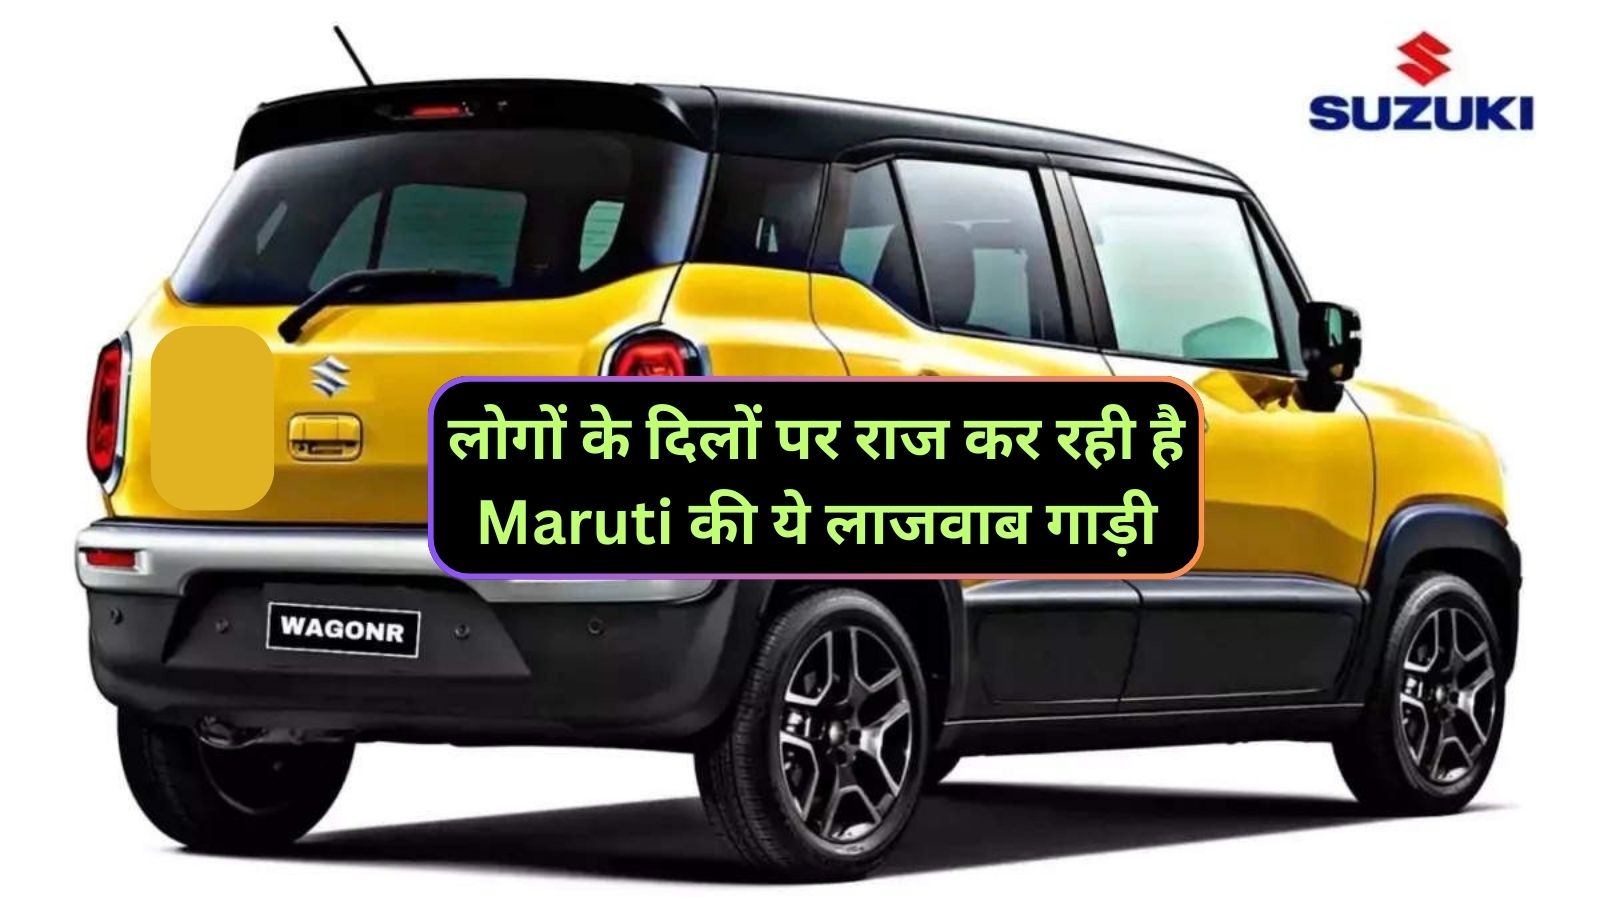 Maruti Wagon R : लोगों के दिलों पर राज कर रही है Maruti की ये लाजवाब गाड़ी,जानिए इसके लाजवाब माइलेज और कीमत के बारे मे